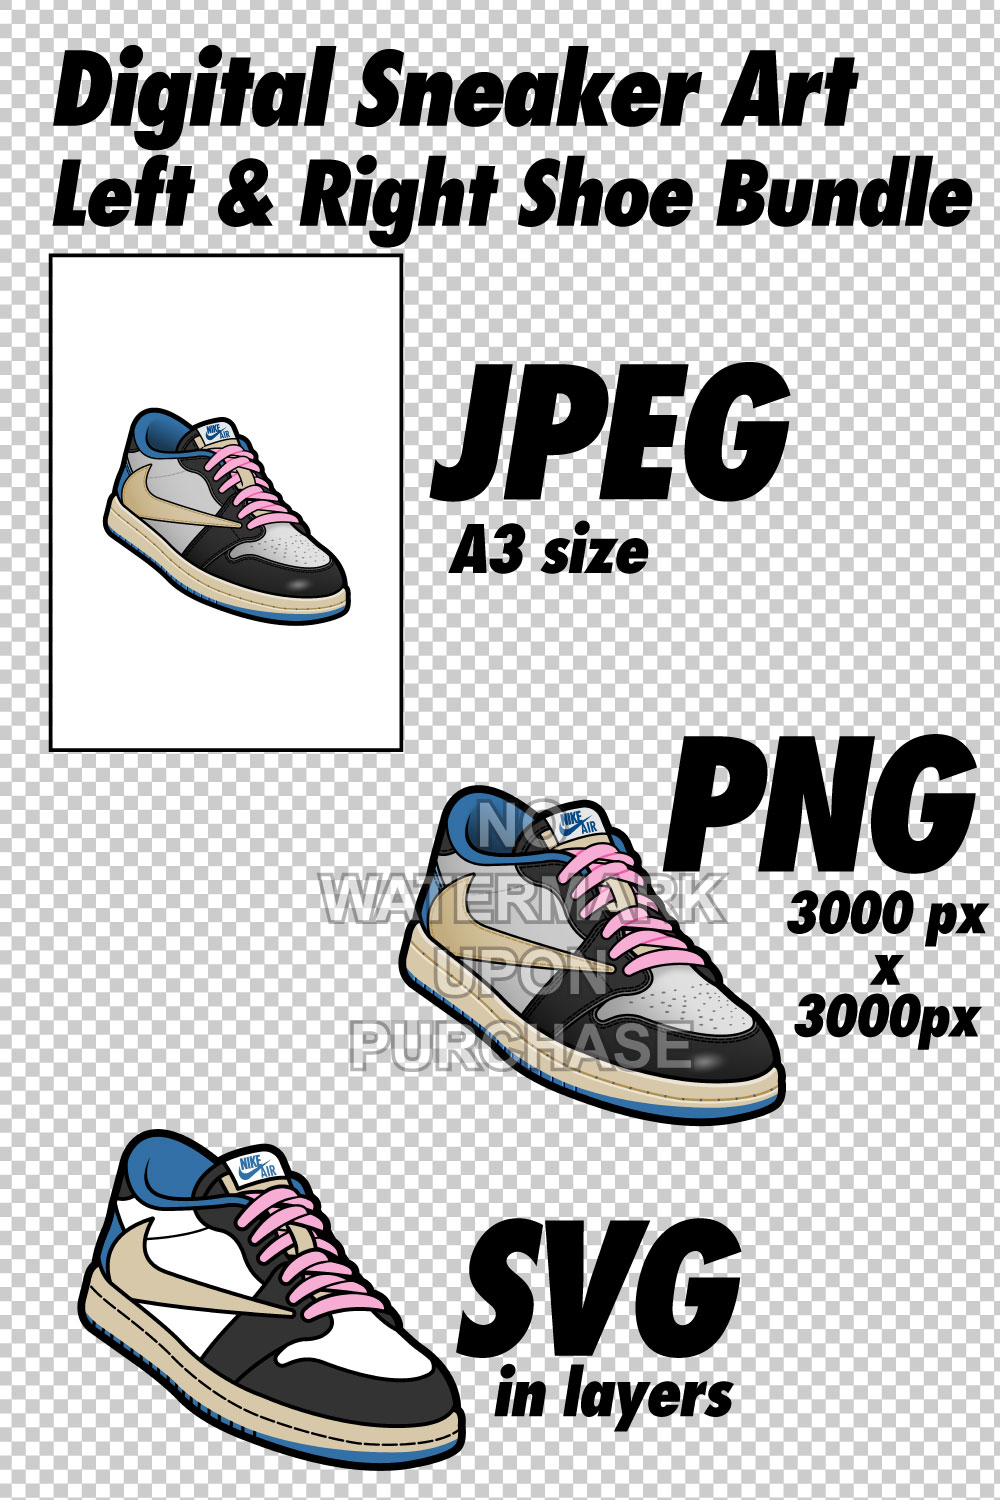 Air Jordan 1 Low Travis Scott x Fragment Design JPEG PNG SVG Sneaker Art Right & Left shoe bundle with lace swap Digital Download pinterest preview image.